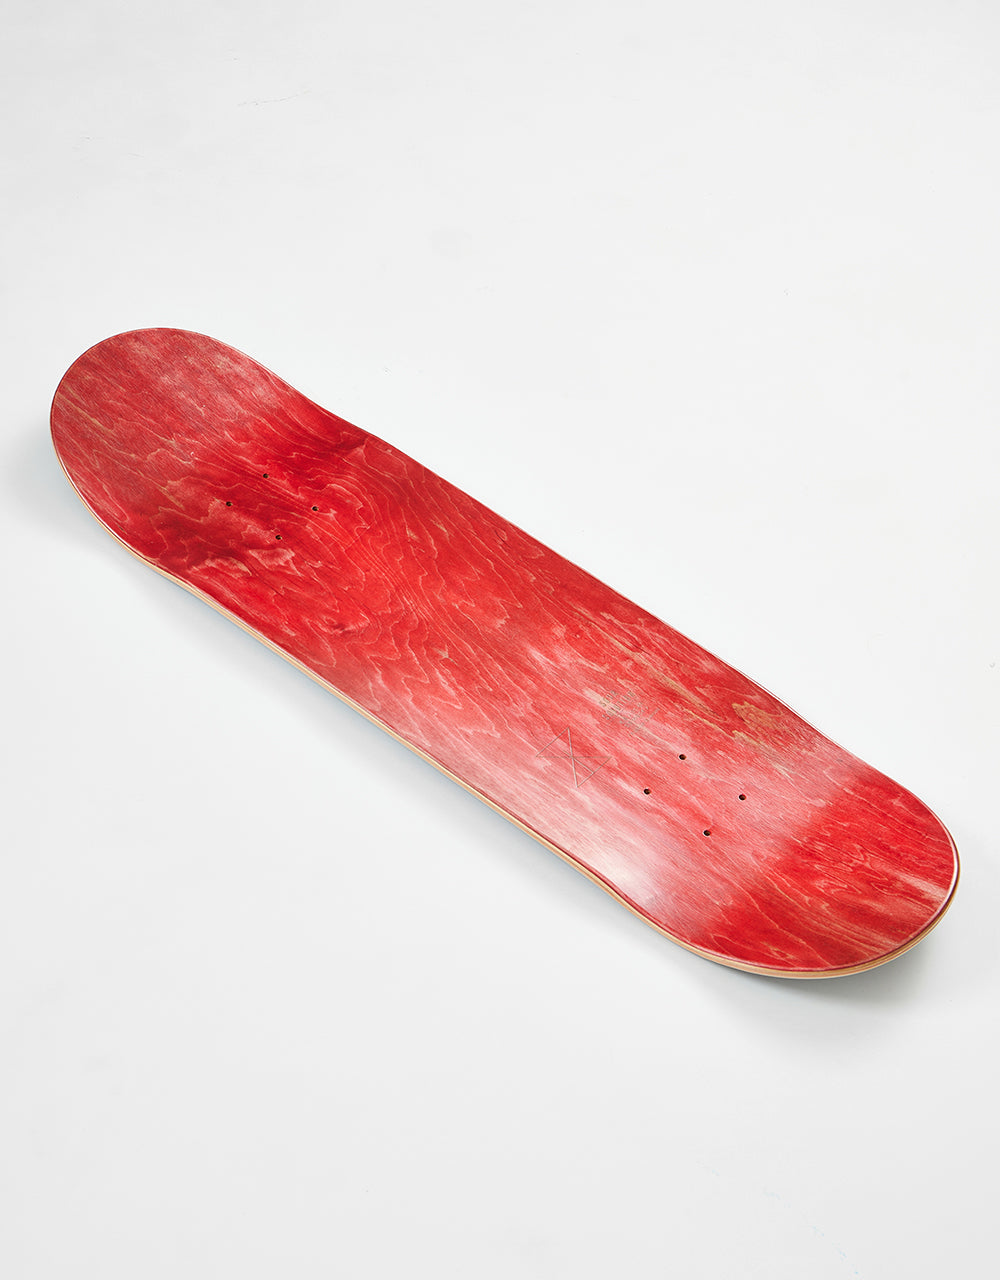 Sour Solution DK Skateboard Deck - 8.5"